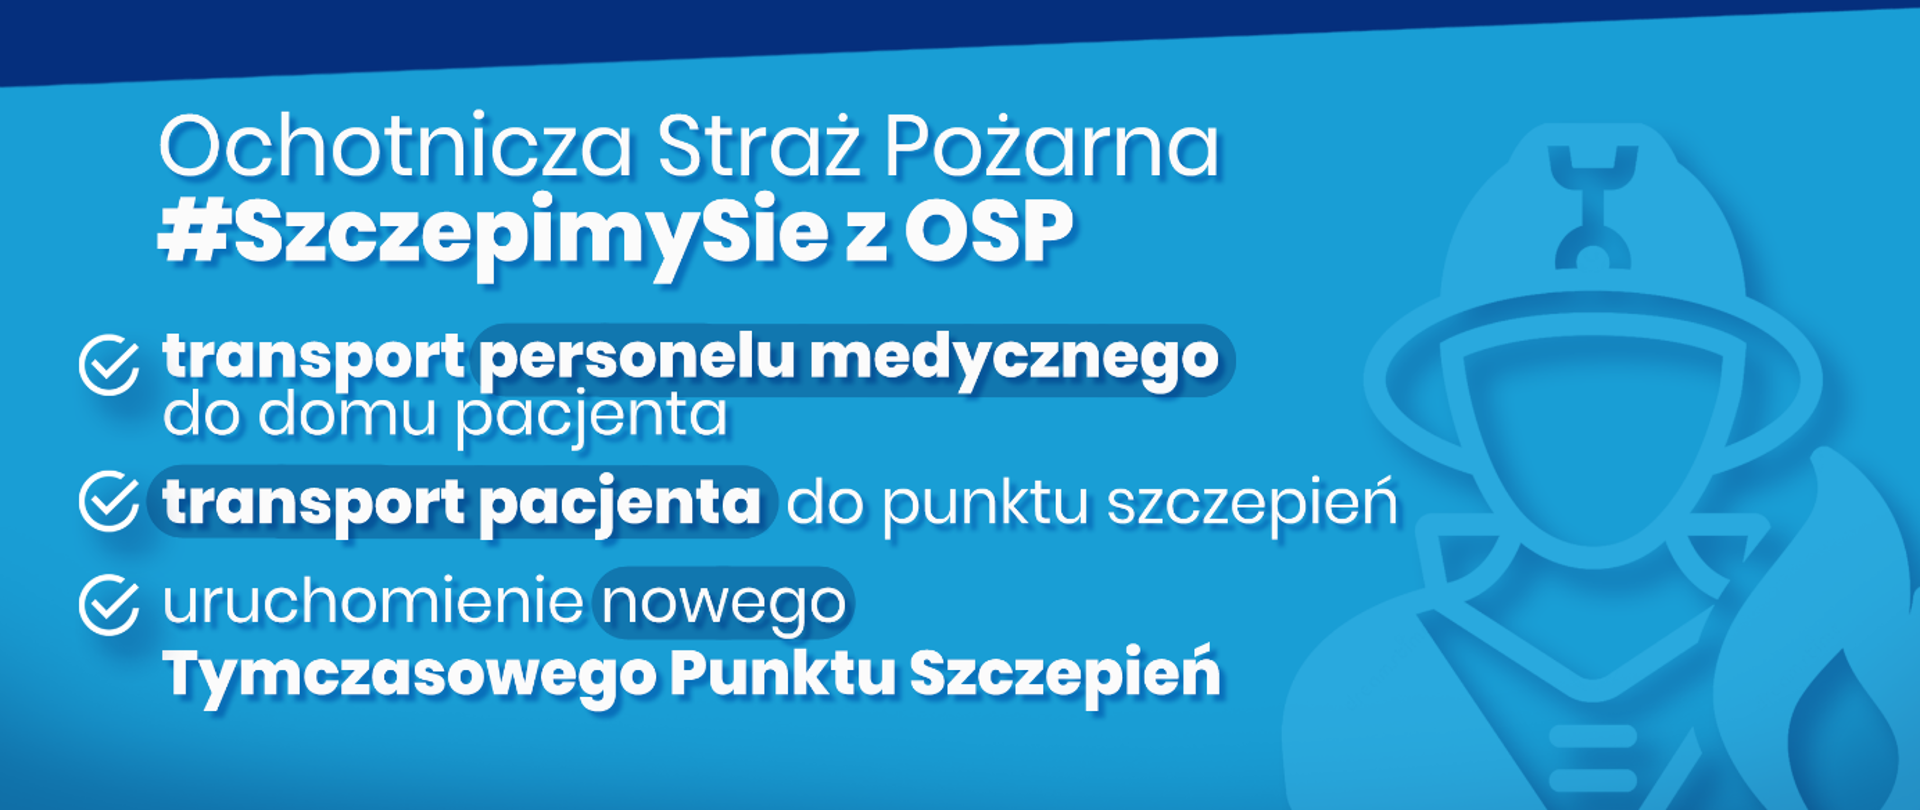 Niebieska karta z napisami promująca akcję #SzczepimySie z OSP